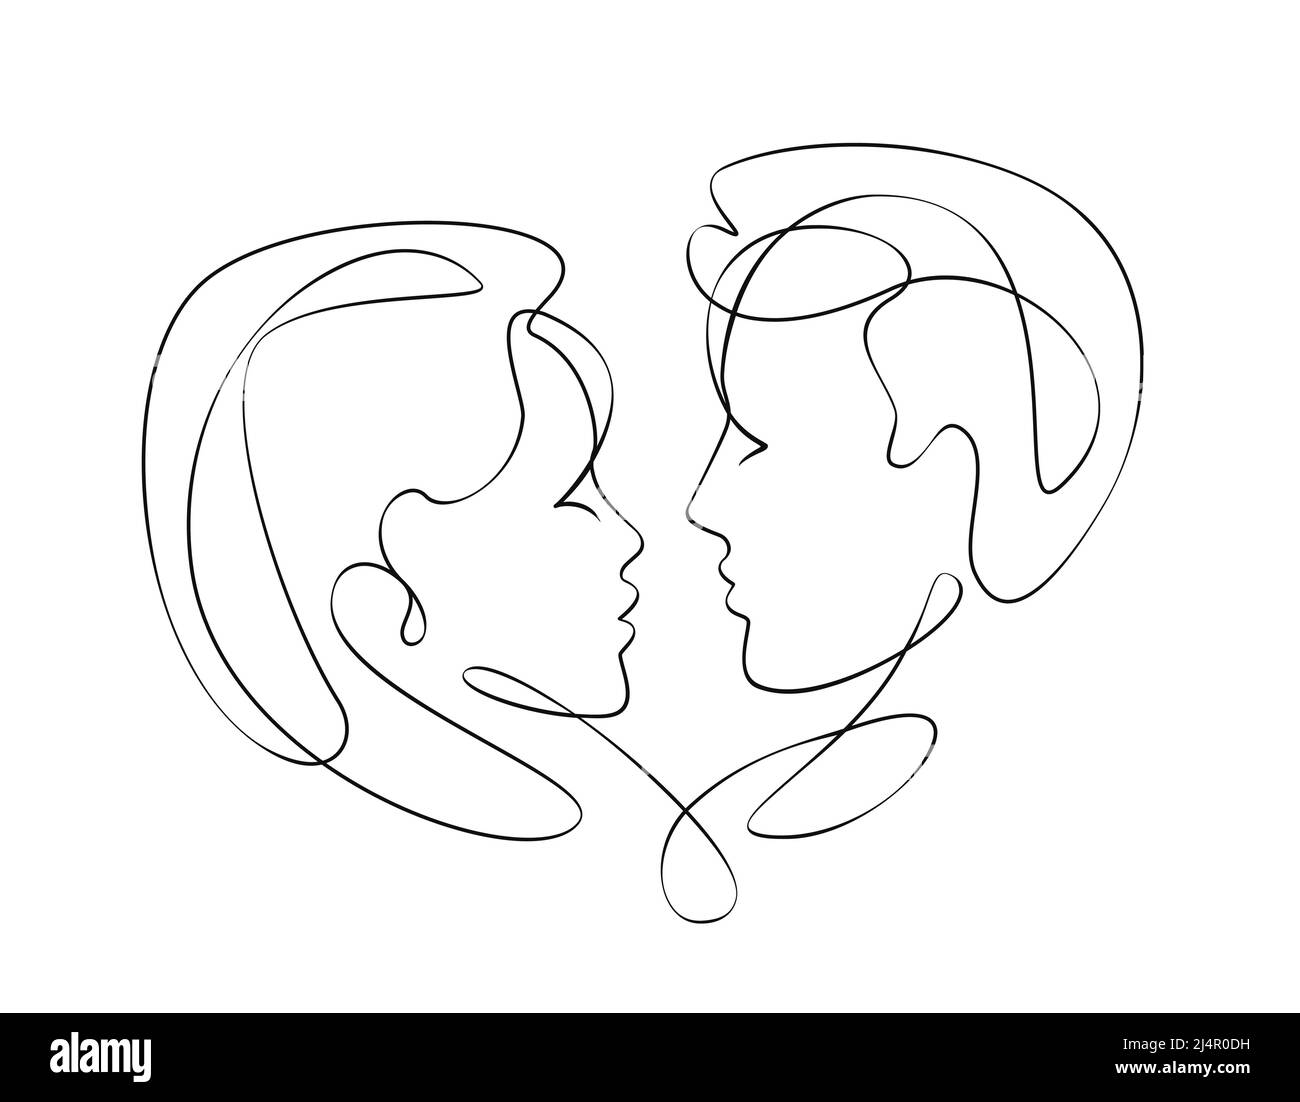 Liebe, kontinuierliche eine Linie Zeichnung. Abstrakte liebevolle Paar küssen. Gesichter von Männern und Frauen. Vektordarstellung Minimalismus Konzept Stock Vektor